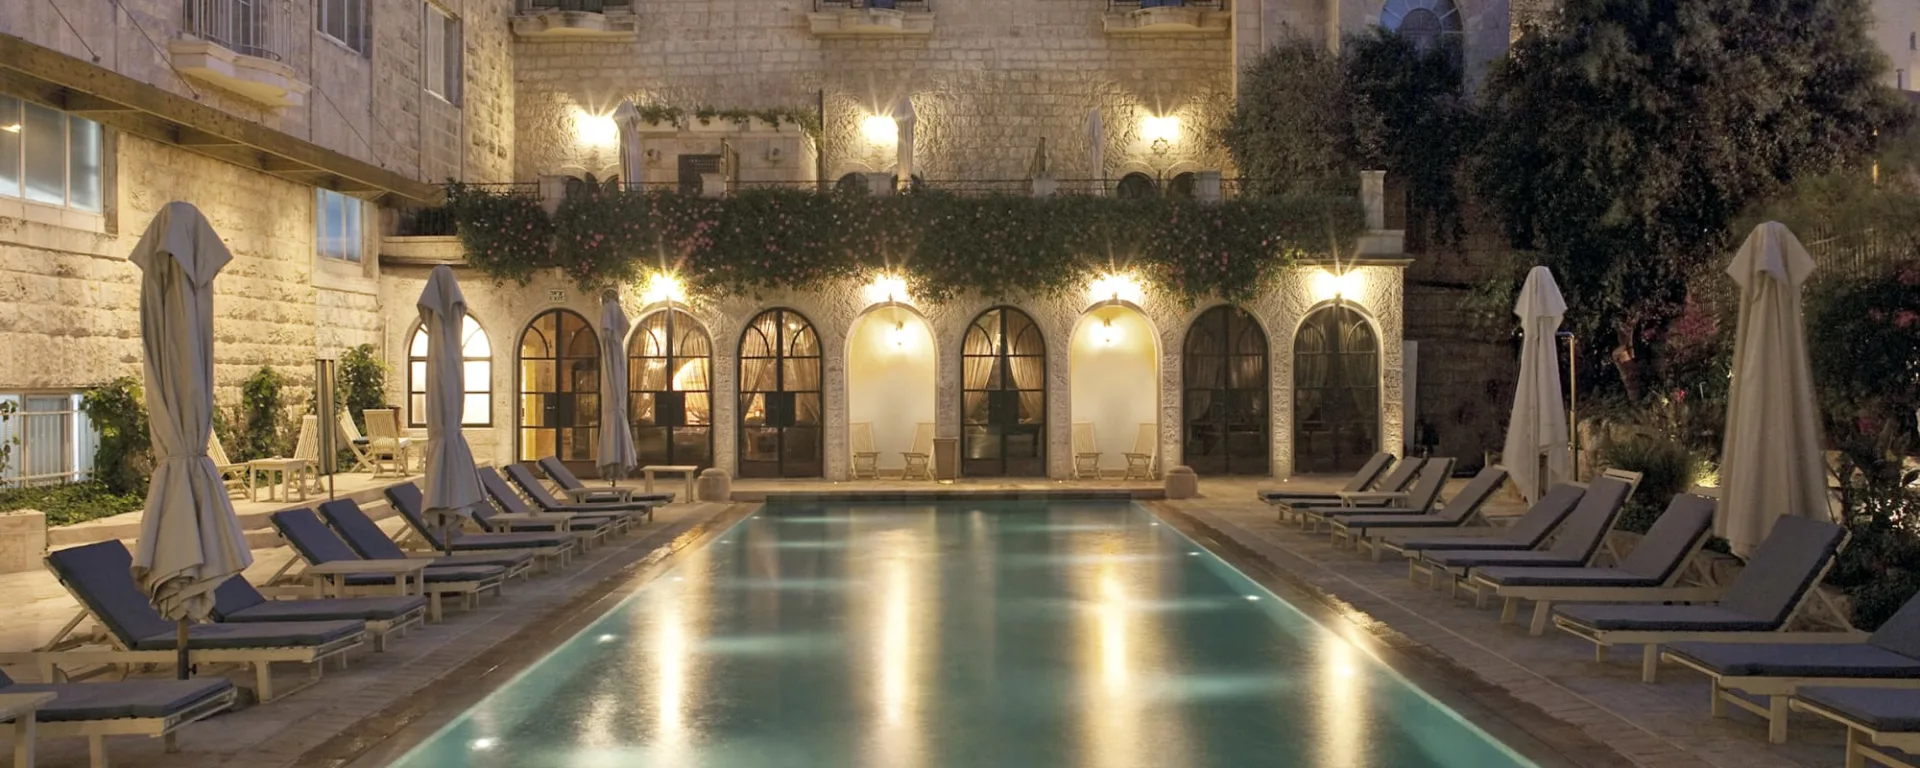 American Colony Hotel in Jerusalem: Jerusalem American Colony Hotel Pool